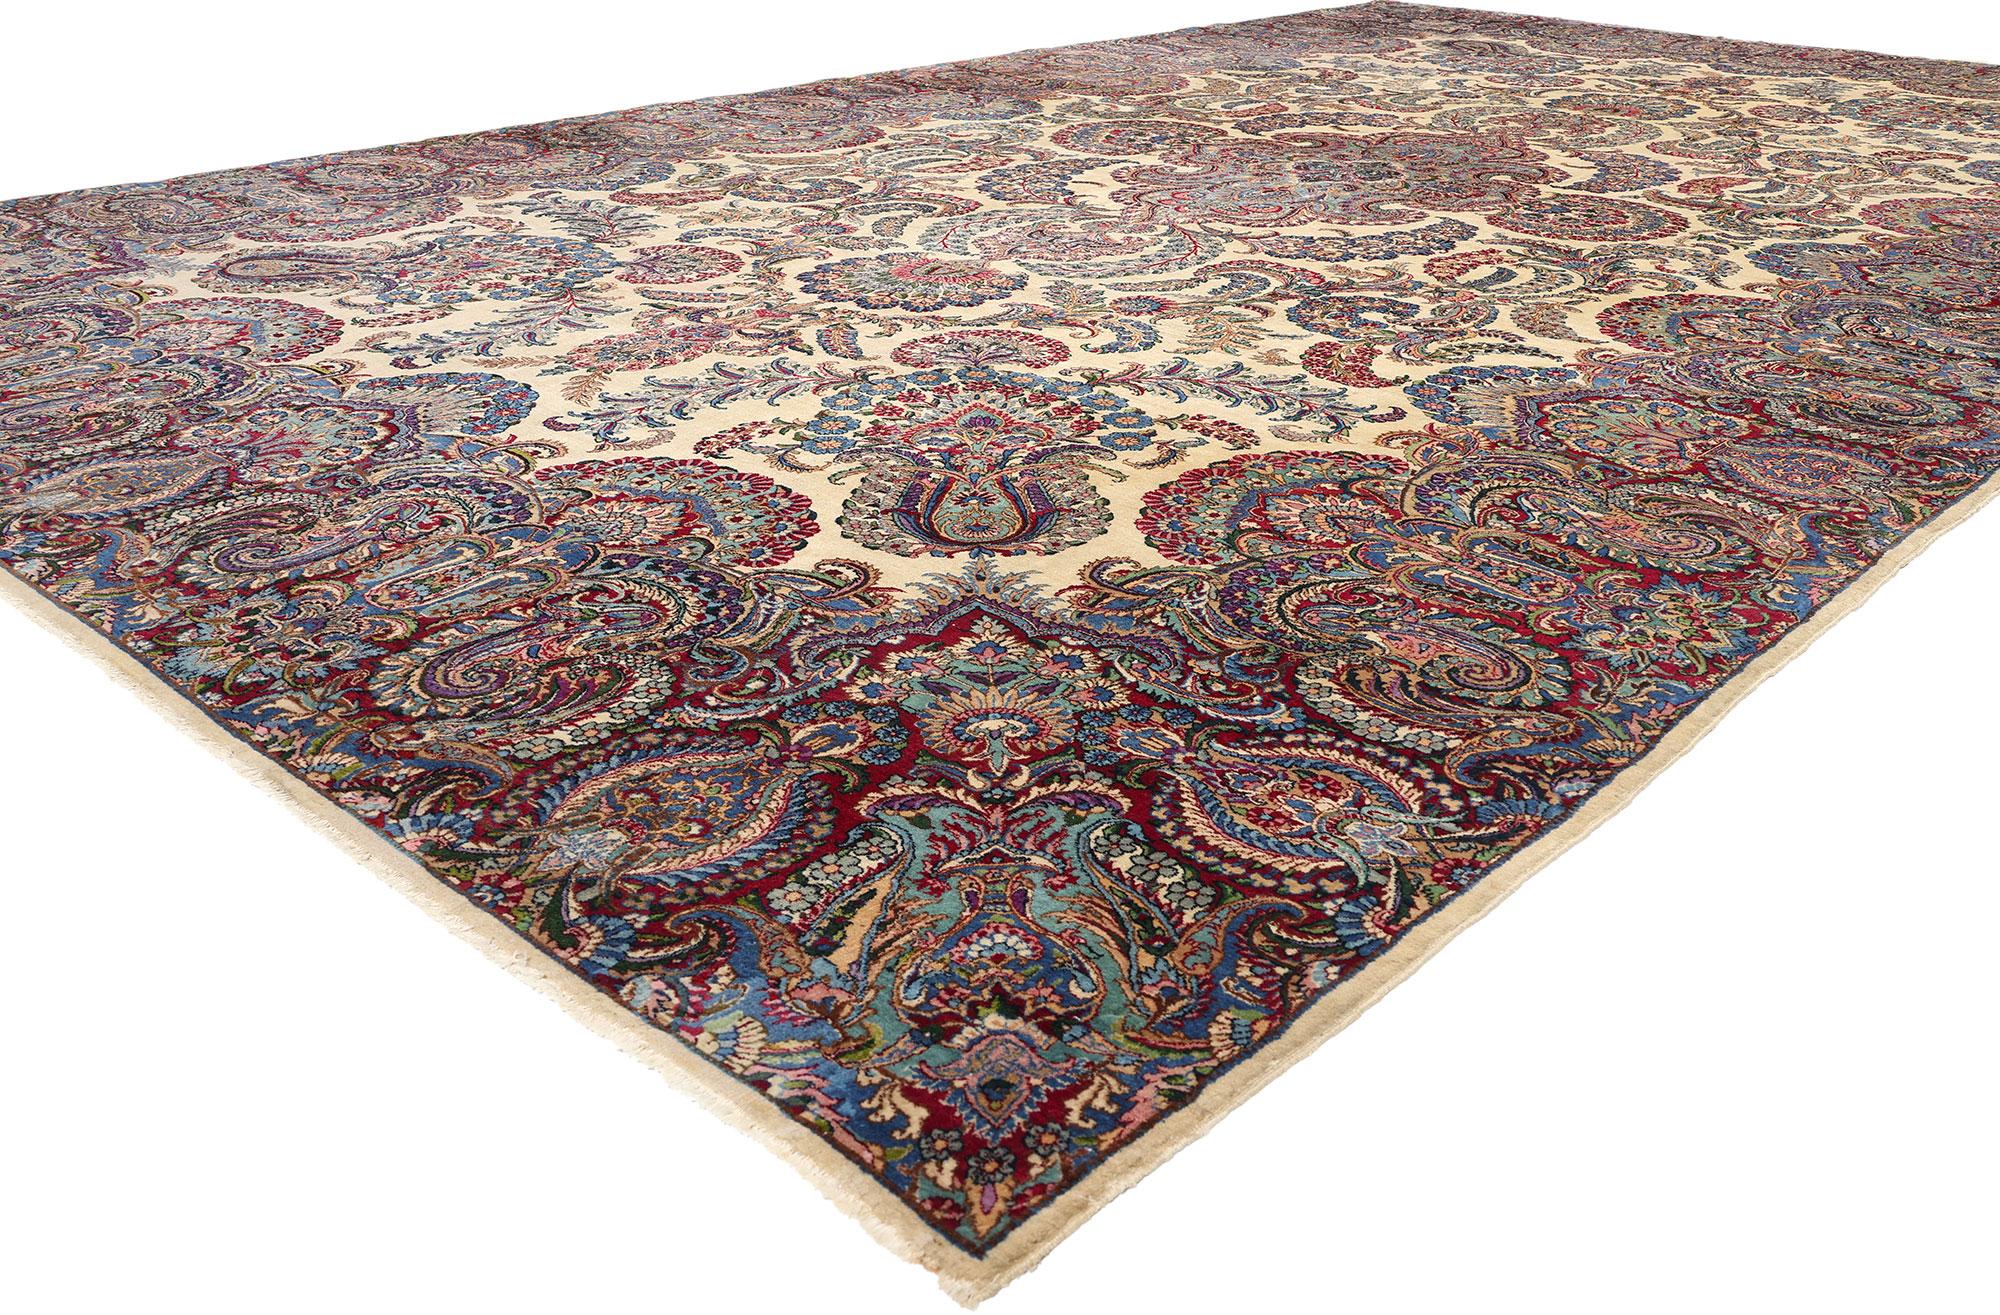 78750 Übergroßer antiker persischer Kerman-Teppich, 11'08 x 19'05. Persische Kerman-Teppiche in Übergröße sind großformatige Teppiche, die aus der Stadt Kerman im Iran stammen. Diese Teppiche zeichnen sich durch ihre großzügigen Abmessungen aus, die